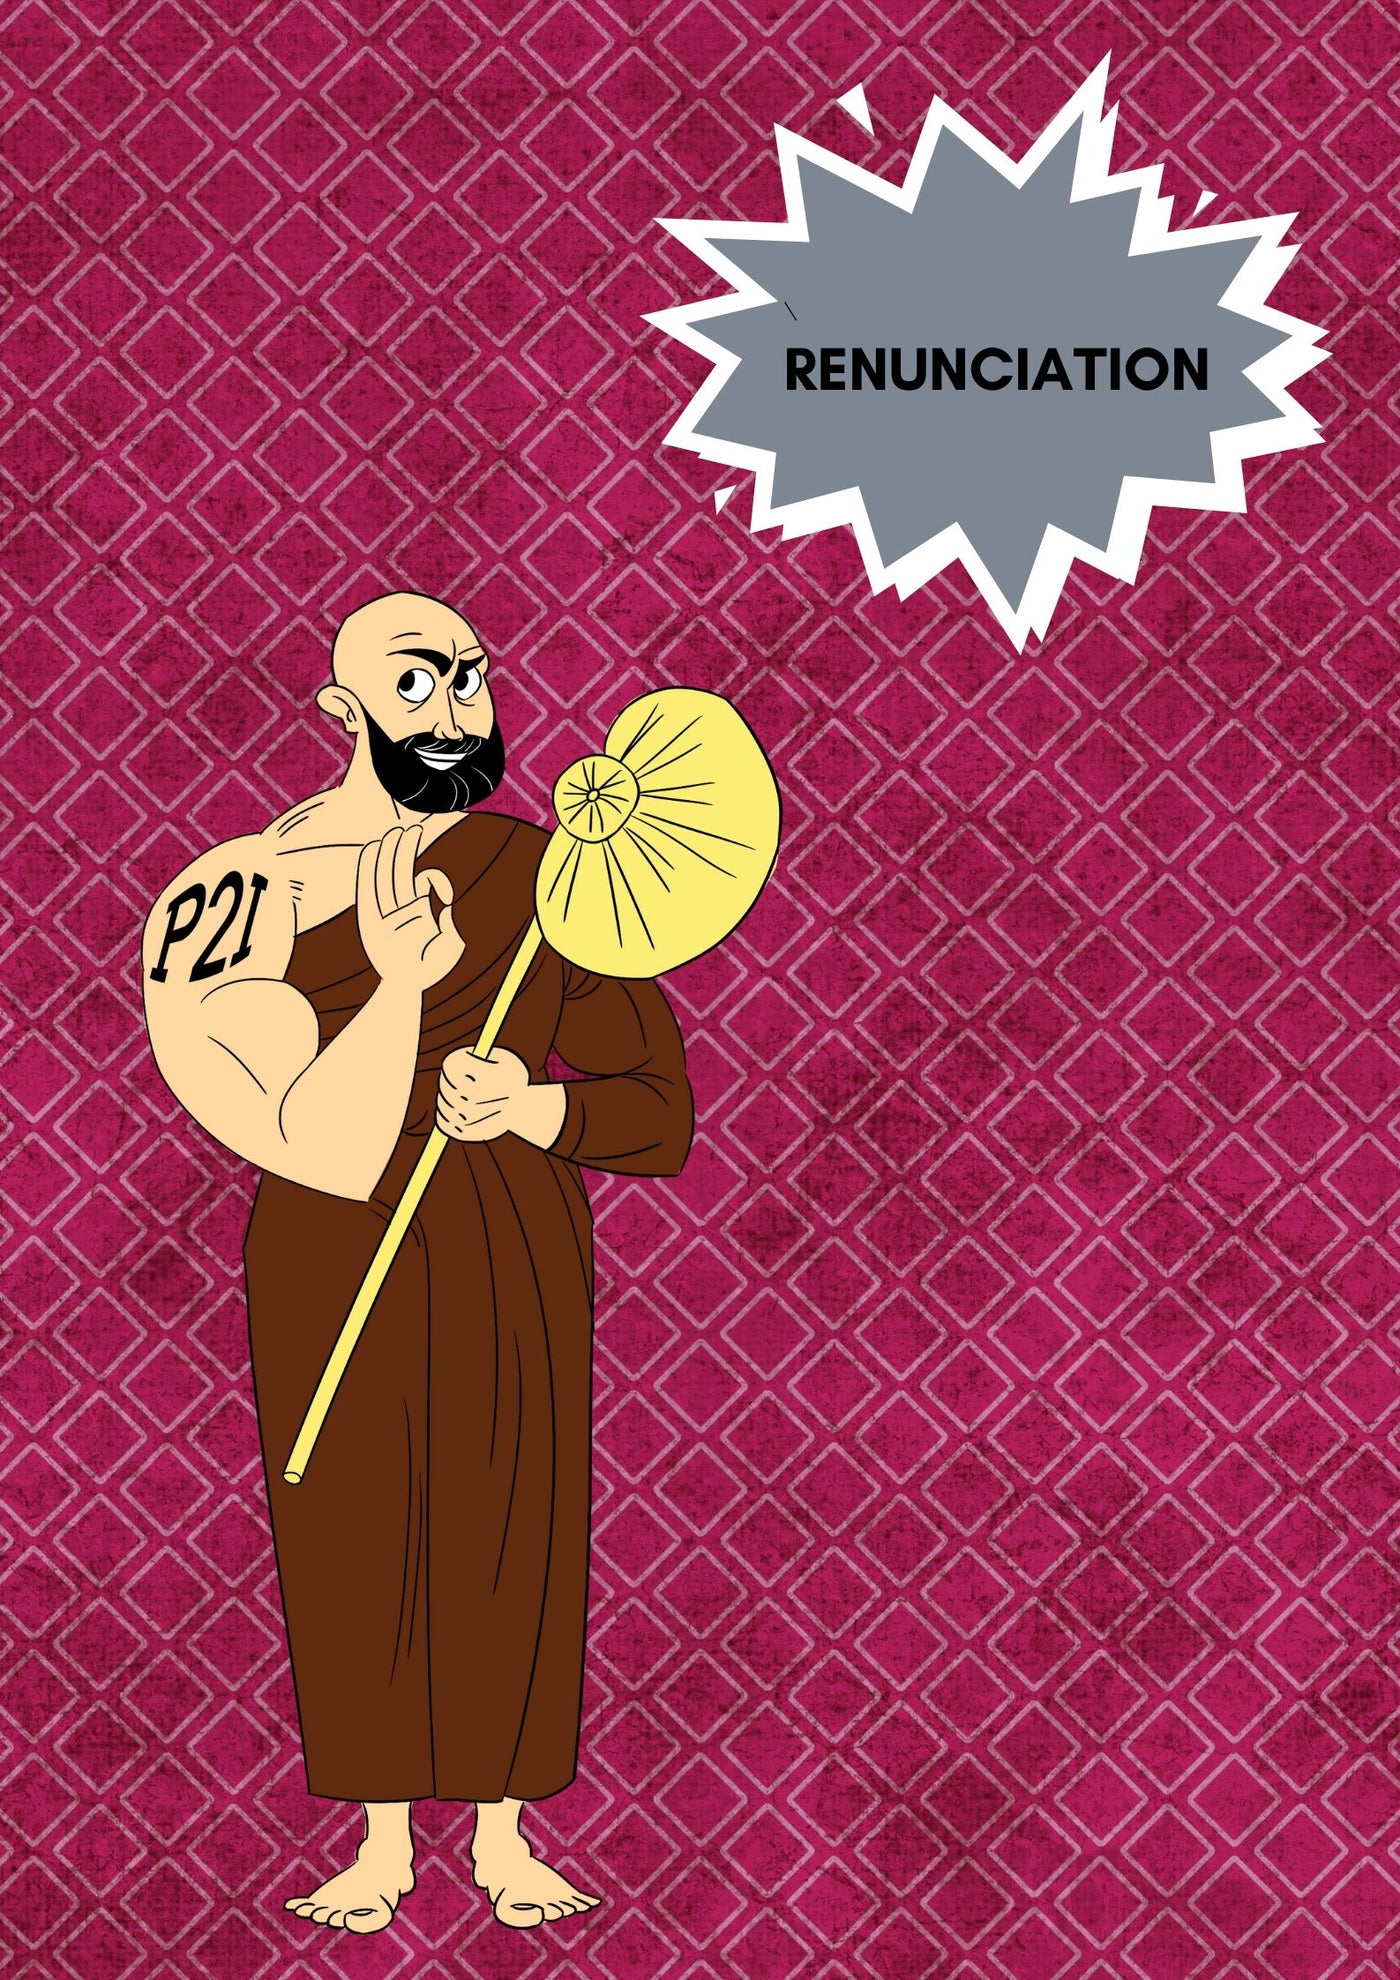 Renunciation to reach enlightenment